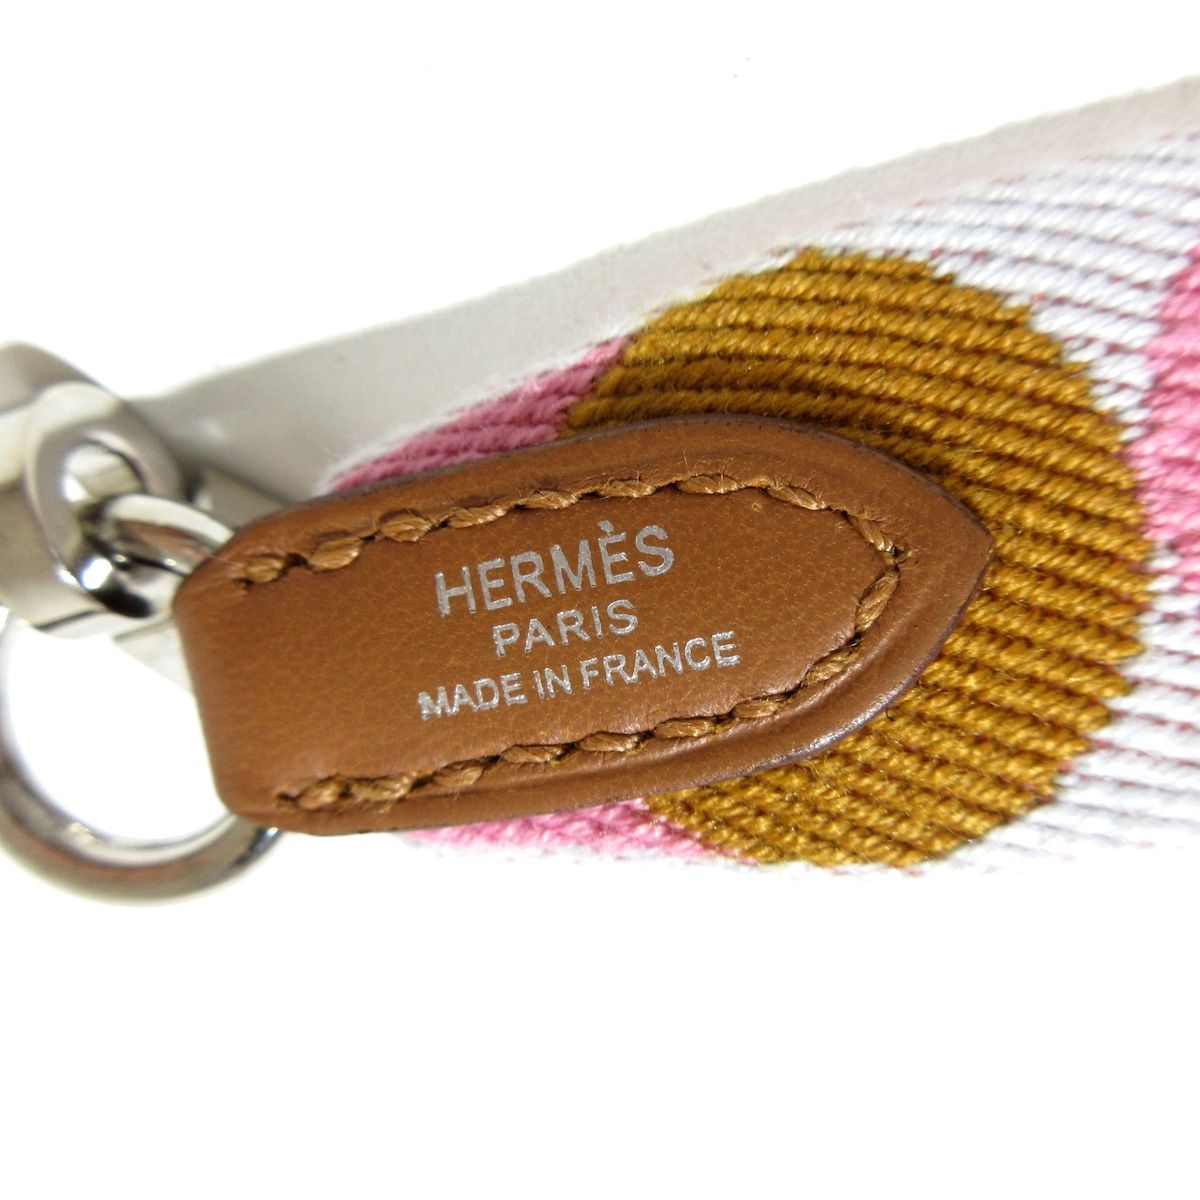 HERMES(エルメス) ショルダーストラップ バンドリエール サングル フリッパーボール 25mm ピンク×ブラウン×白 トワル×ヴォースイフト -  メルカリ